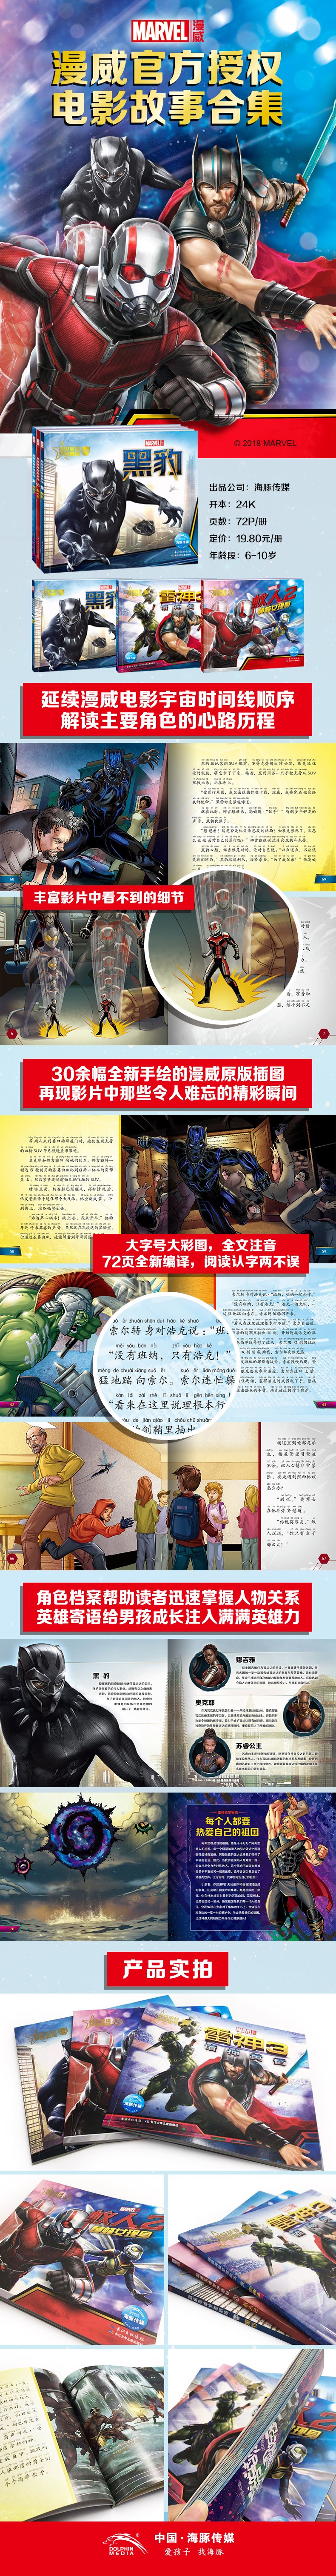 漫威-《超级英雄梦想剧场》后续三册详情页790.jpg